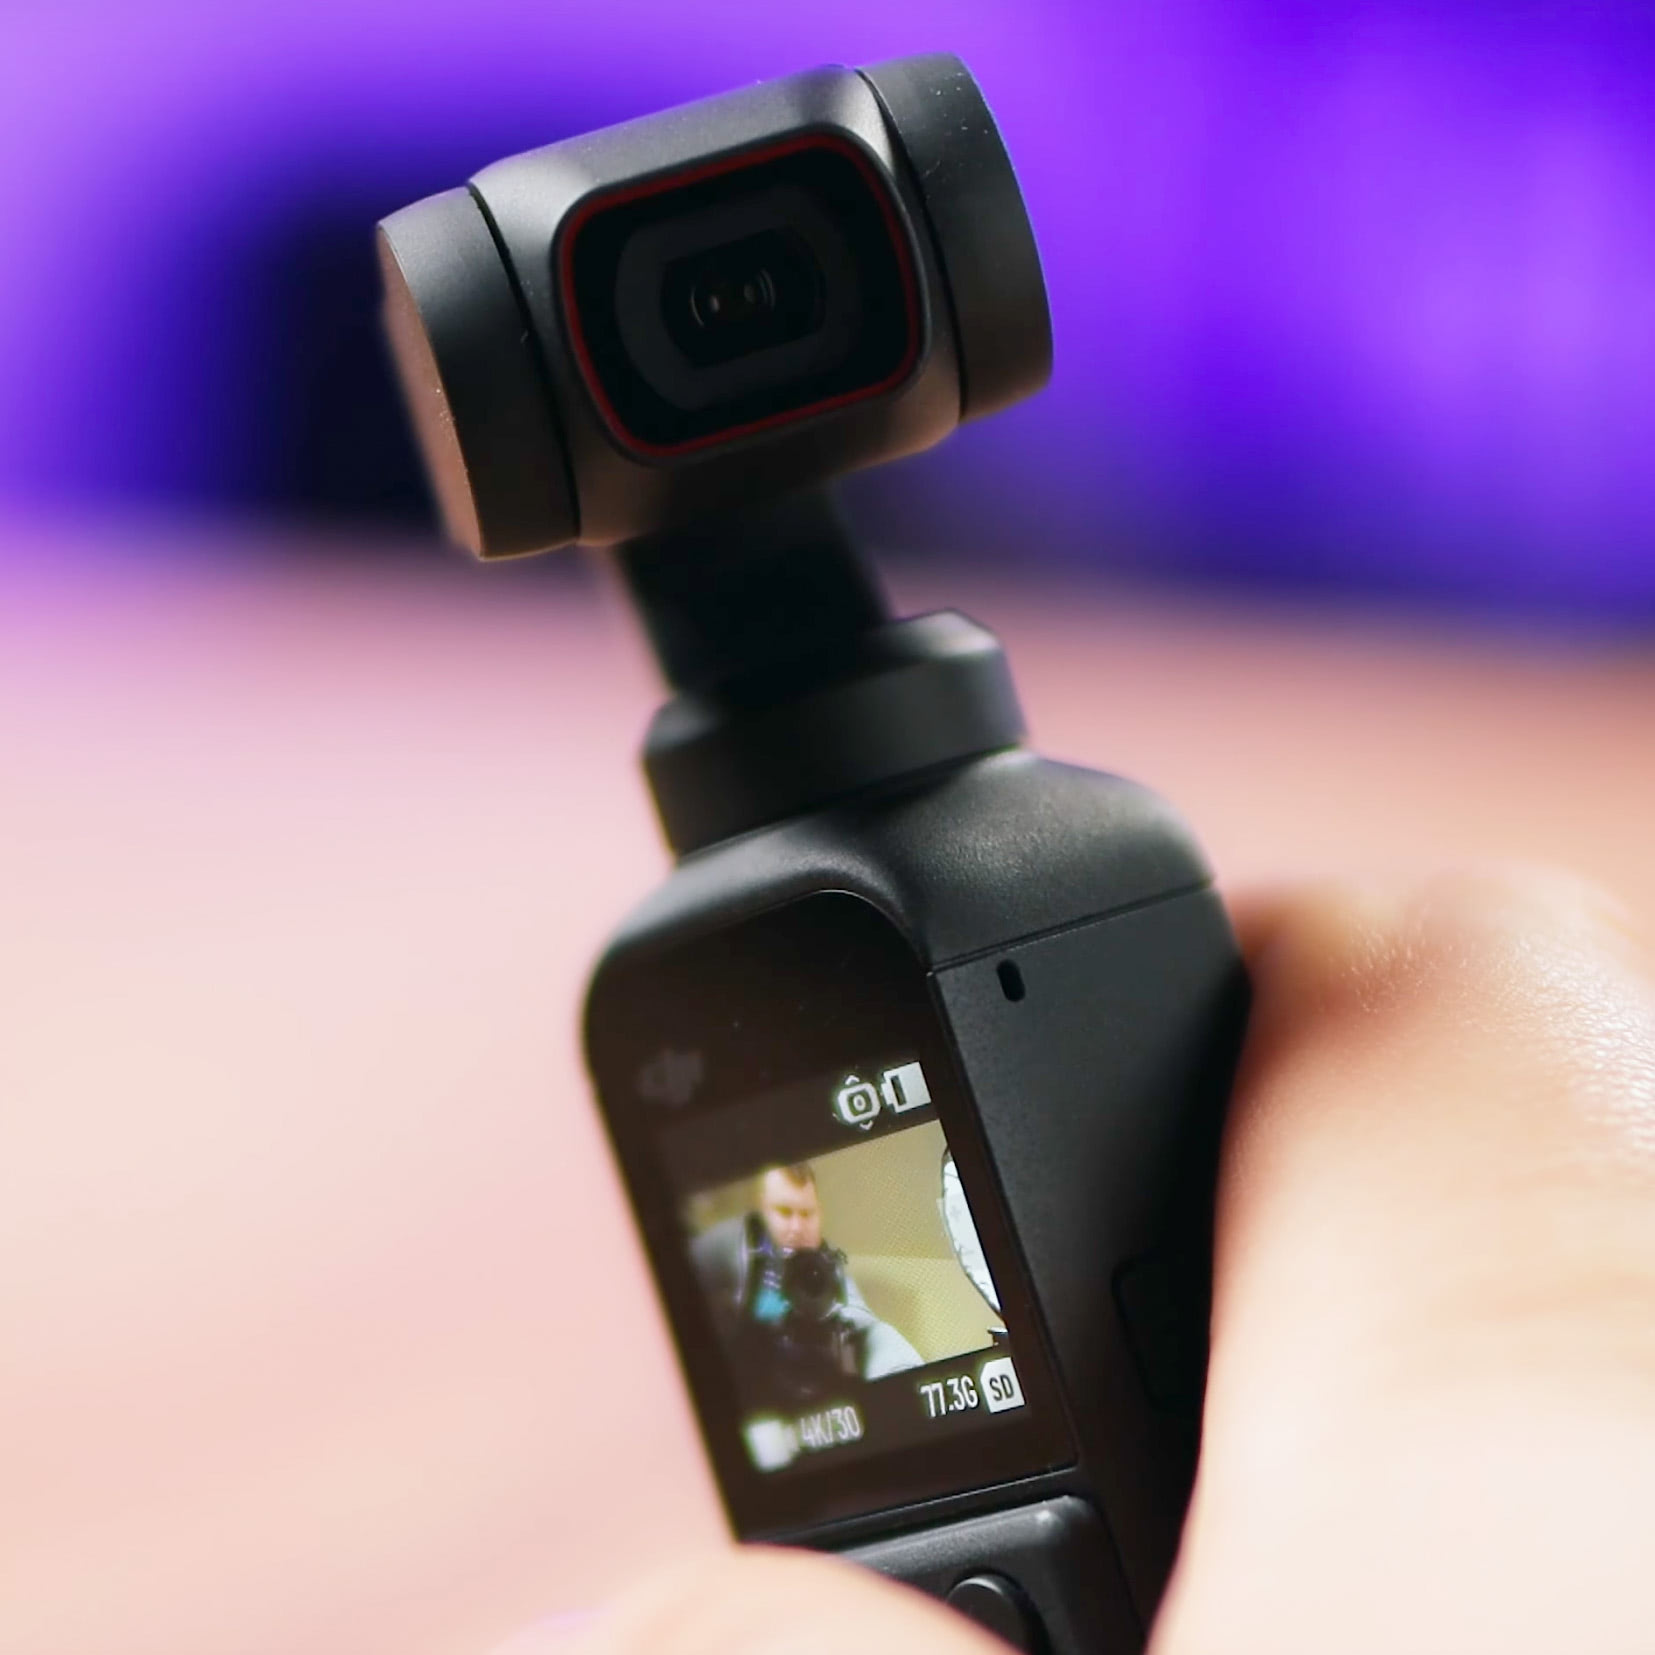 Обзор DJI Pocket 2. Лучшая 4K камера со стабилизатором, автофокусом и хорошим встроенным микрофоном для съемки блогов